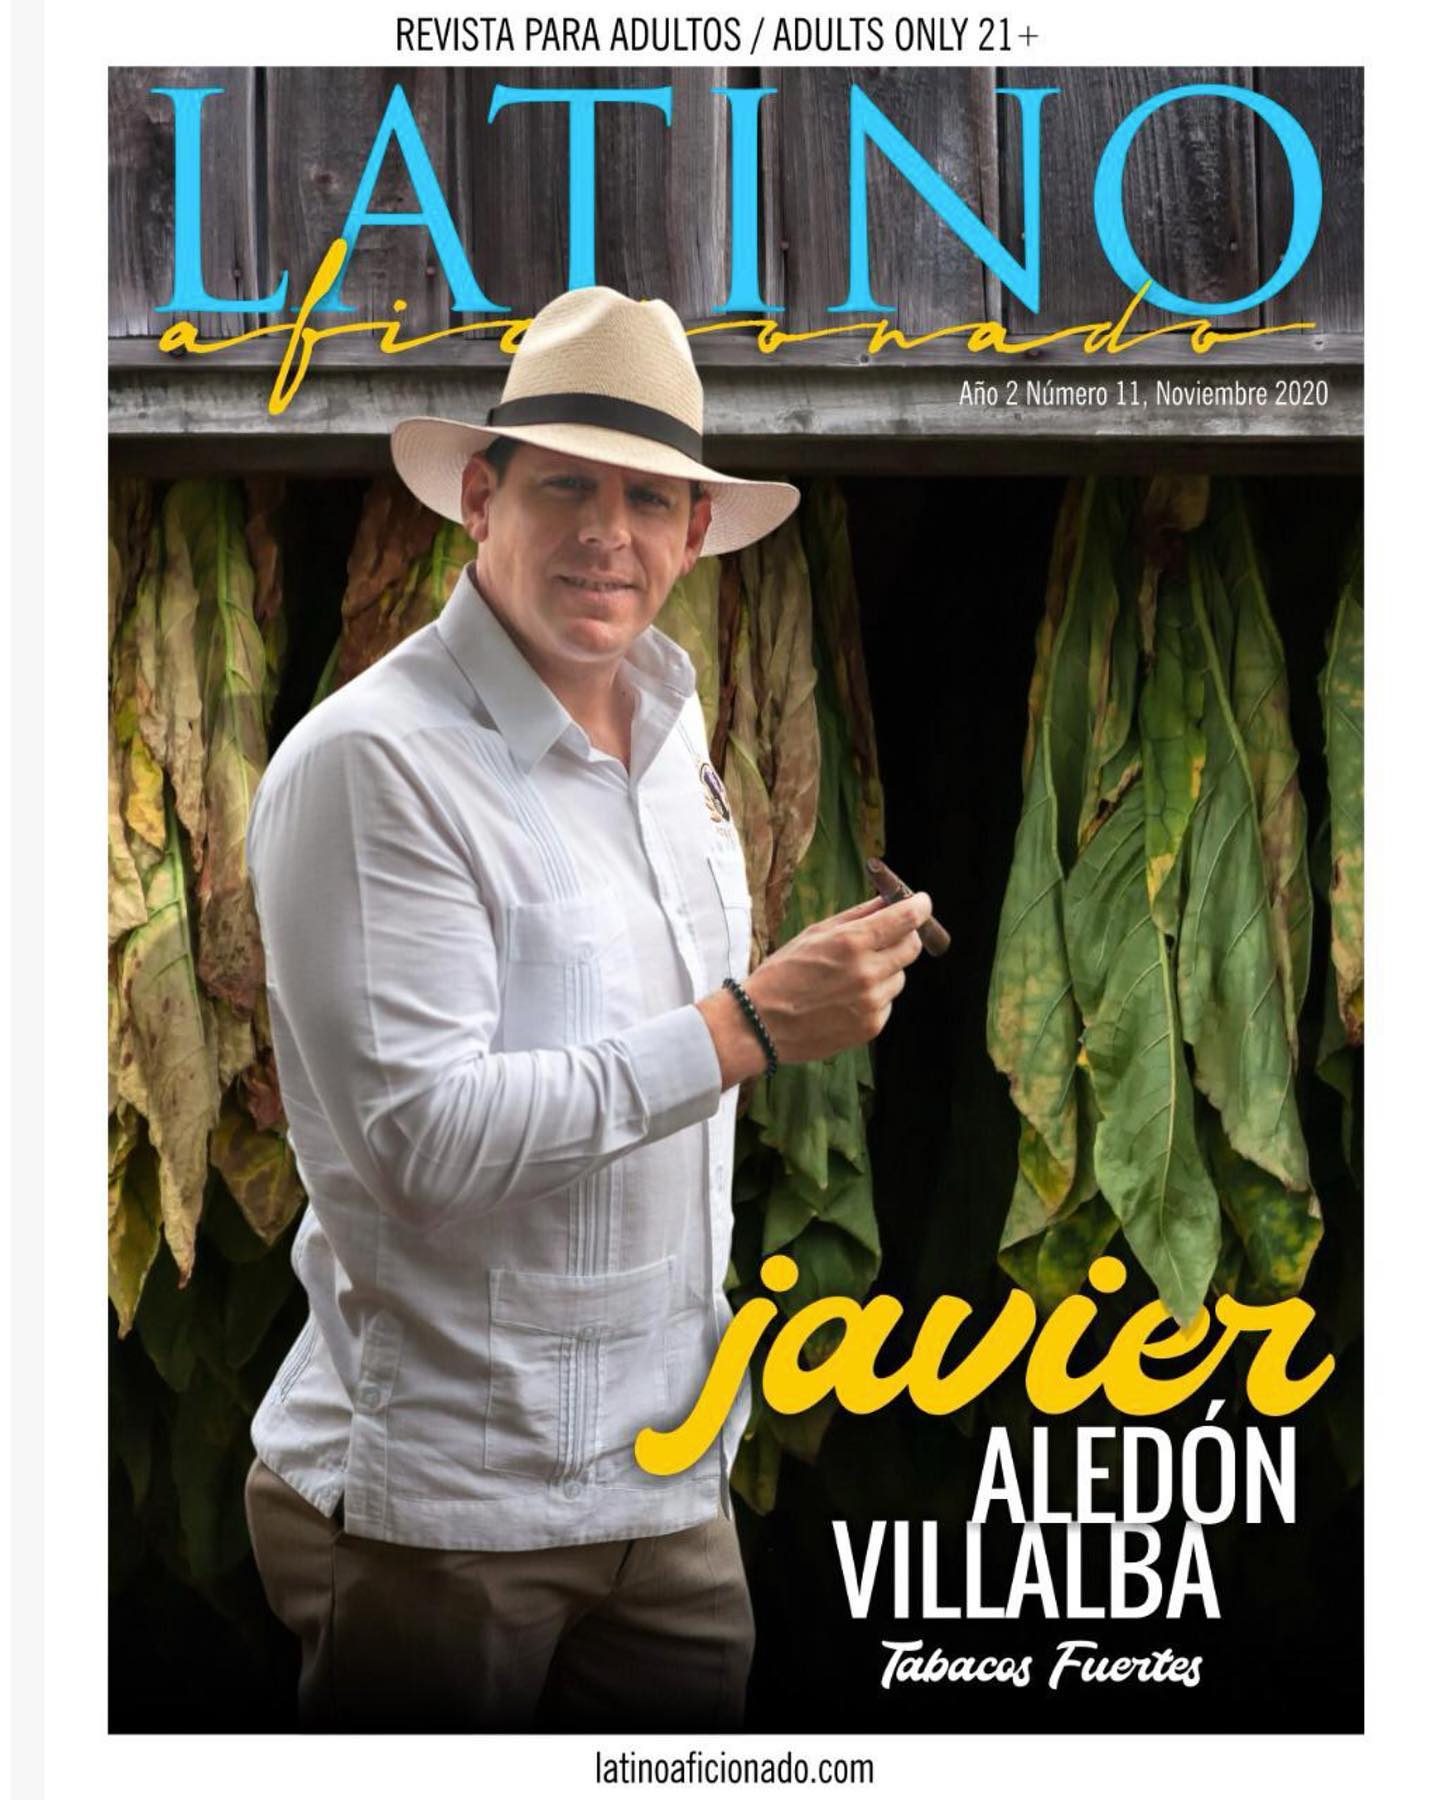 Acabou de sair a nova edição da revista “Latino Aficionado”, e desta vez, escrevi uma matéria com o tema “Puro Toscano, más de 200 años de história”